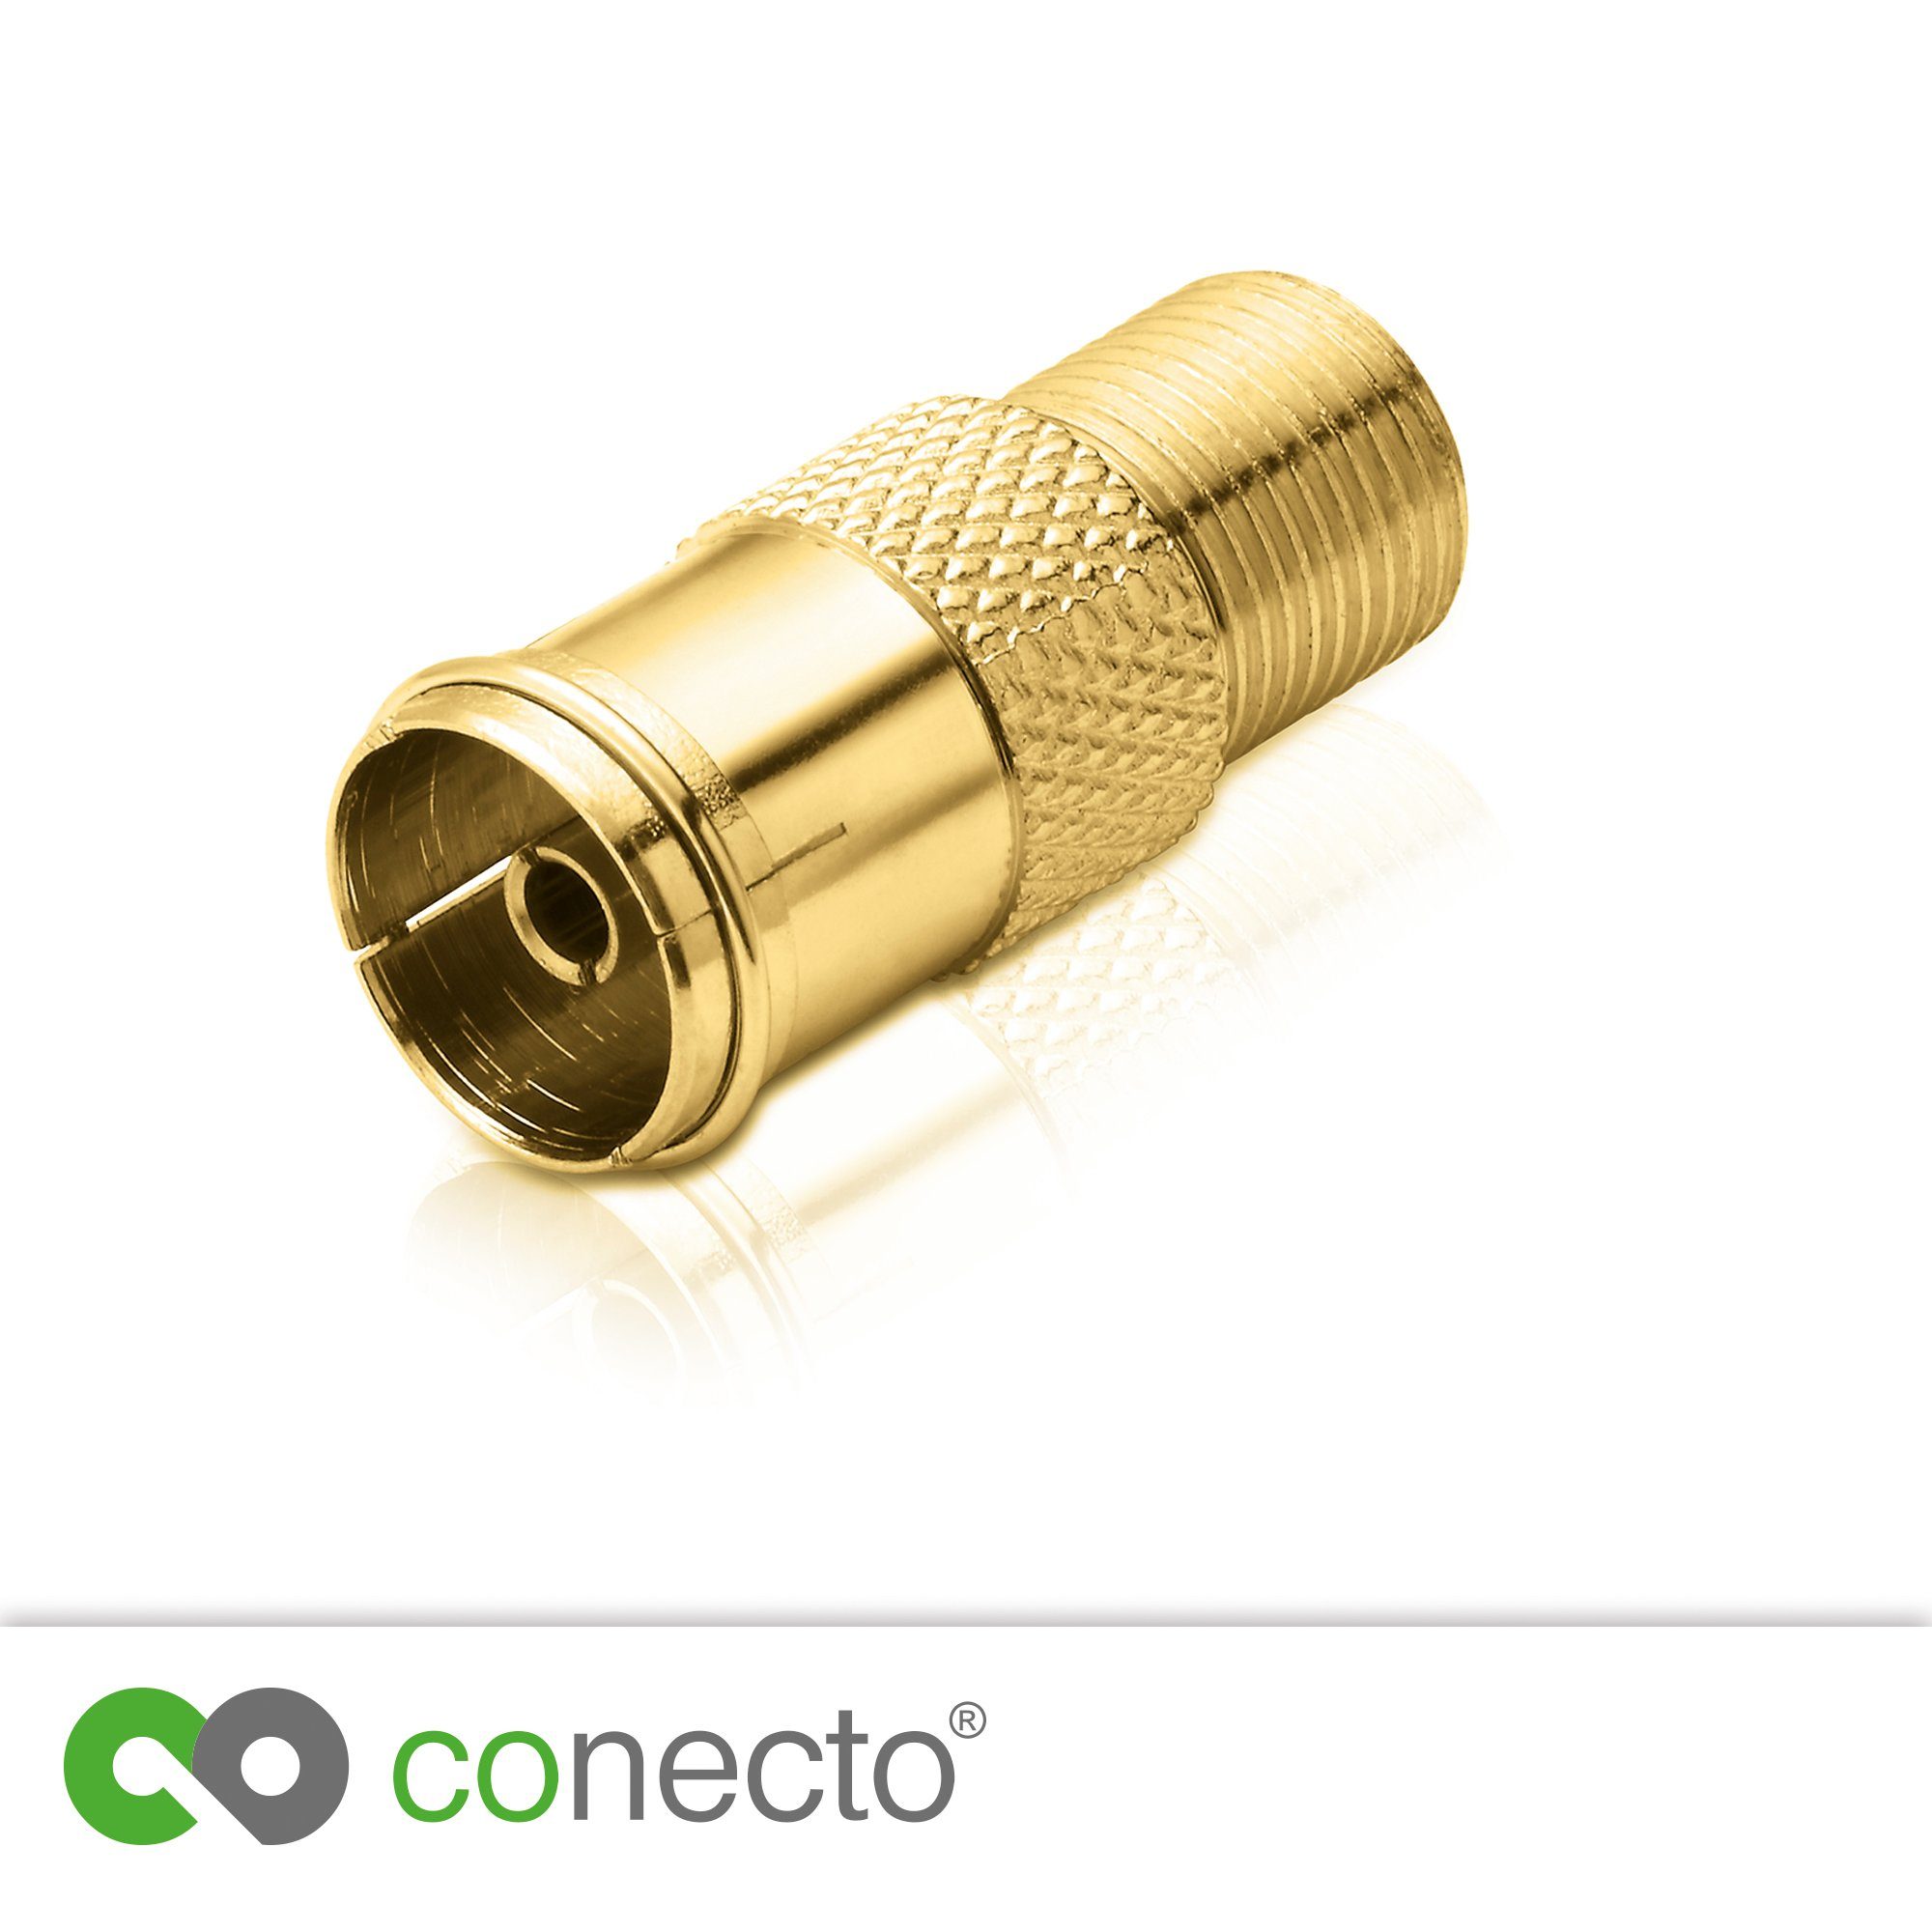 conecto conecto Antennen-Adapter, F-Buchse zum auf Adapter IEC-Koax-Buchse, SAT-Kabel